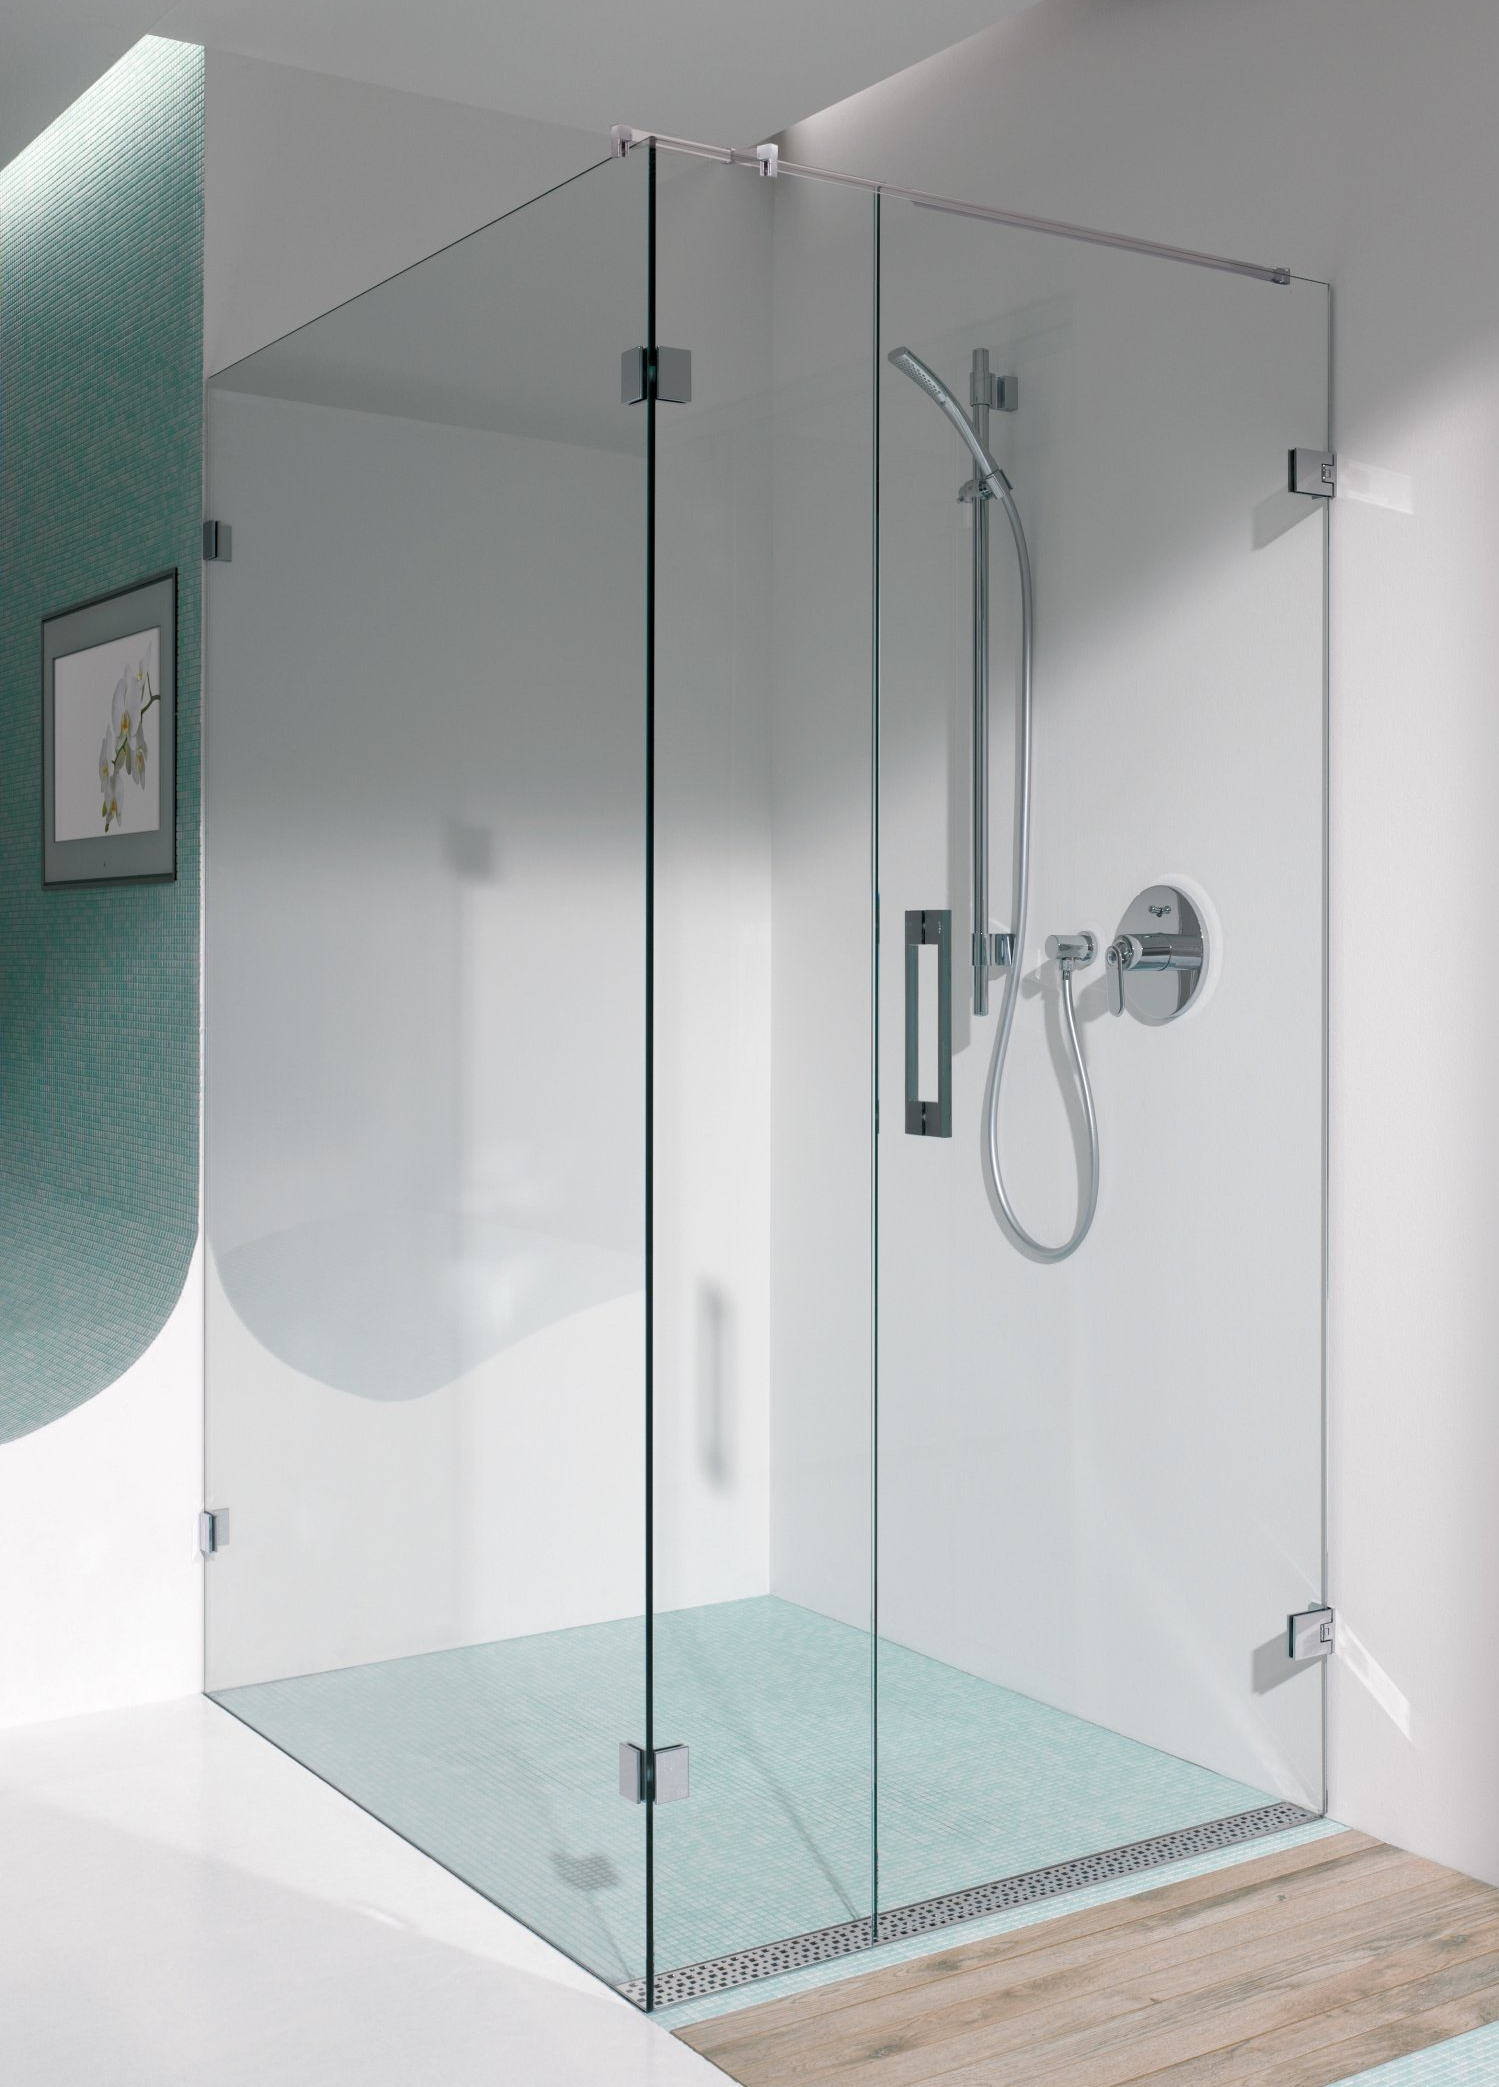 Für jede Raumsituation kann die passende Einbausituation gewählt werden, ob als Duschabtrennung mit Eckeinstieg oder einer faltbaren Duschtür Glas.